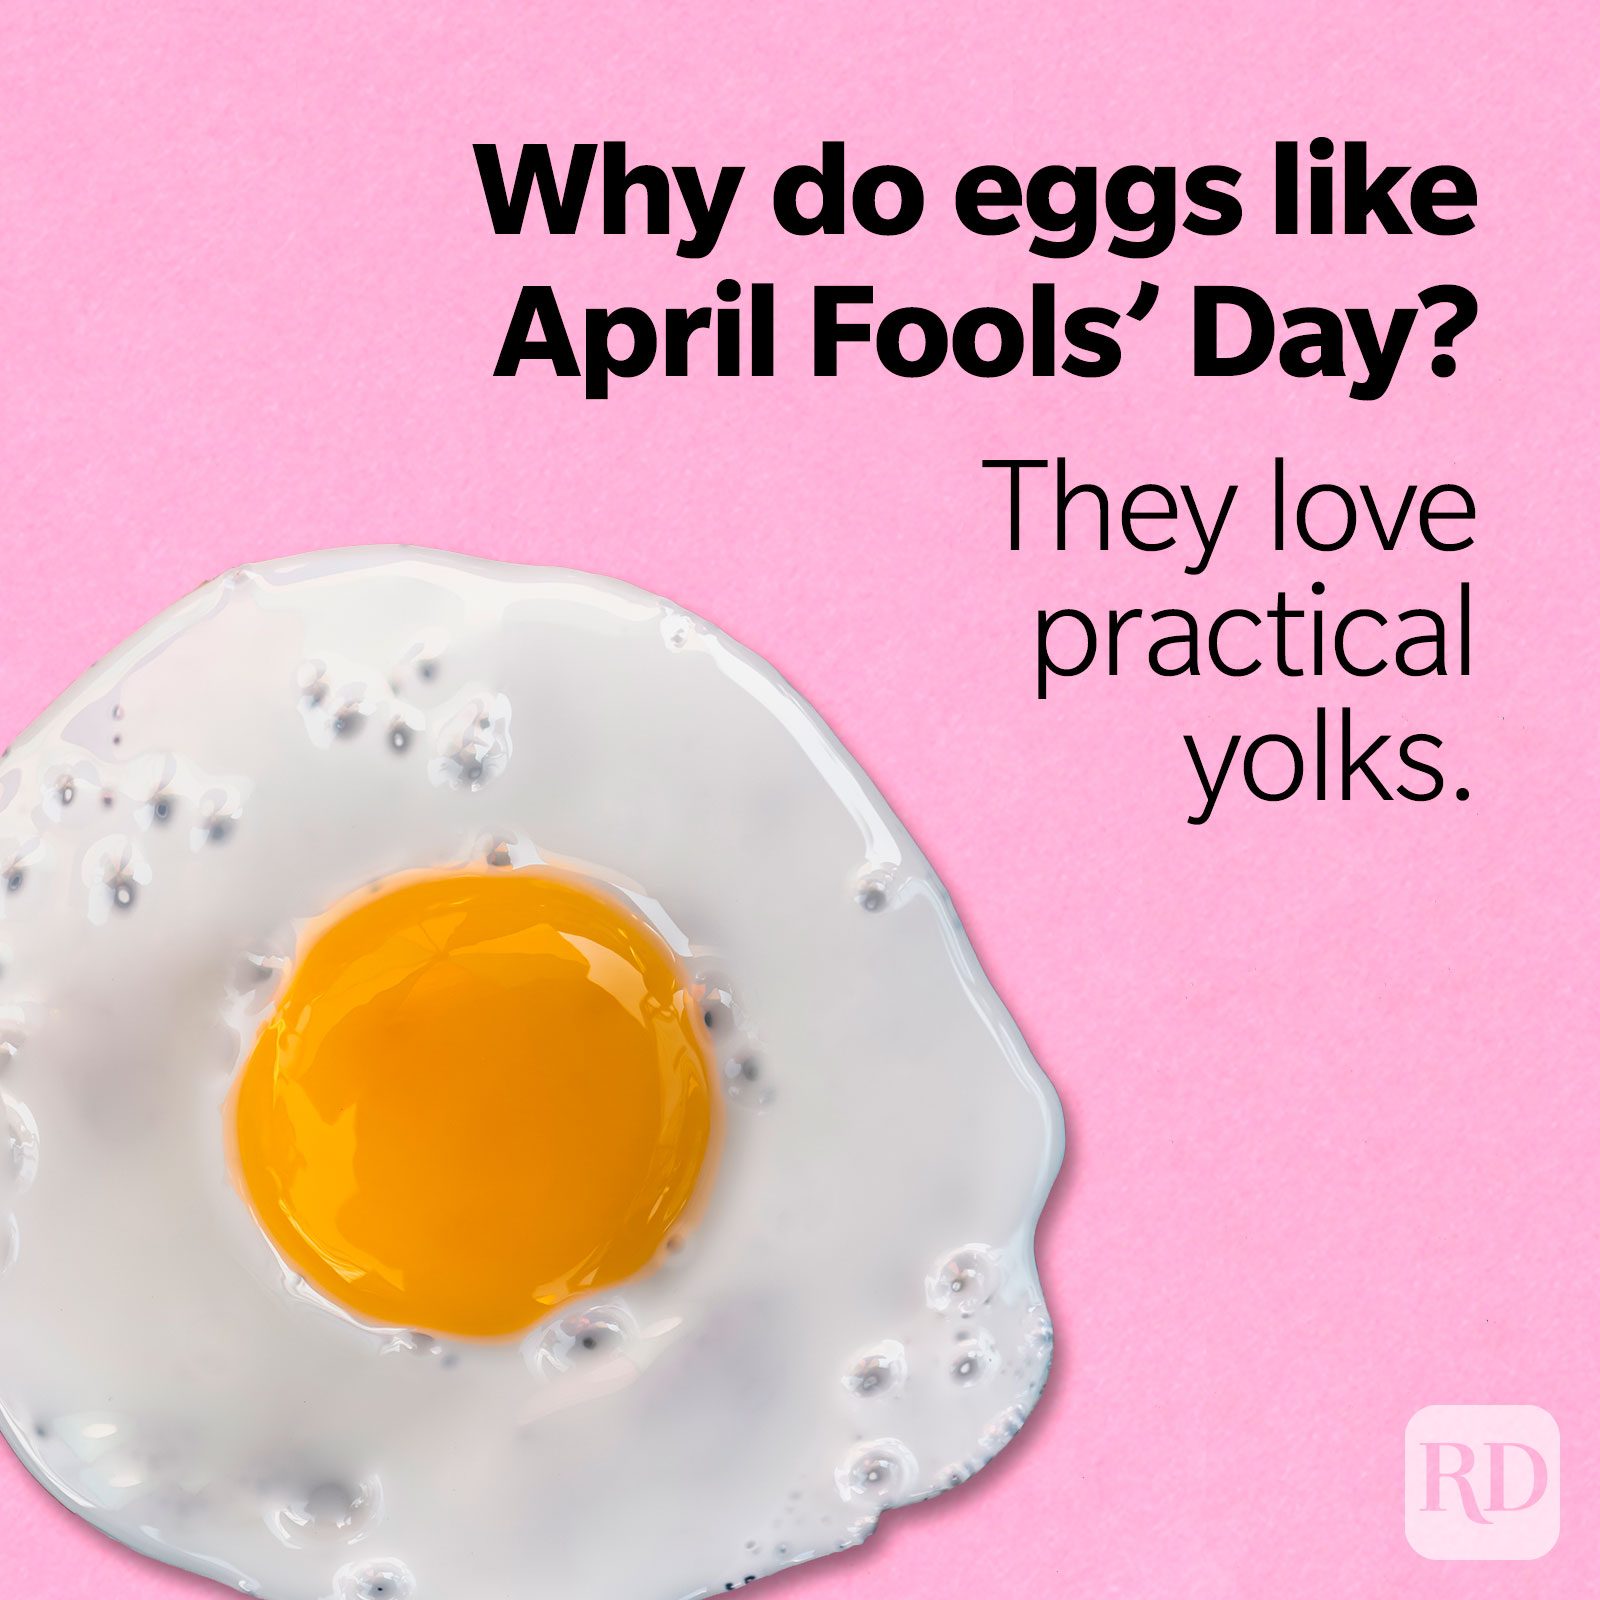 E nao esta? 😂😂😂  Funny april fools pranks, Joke of the day